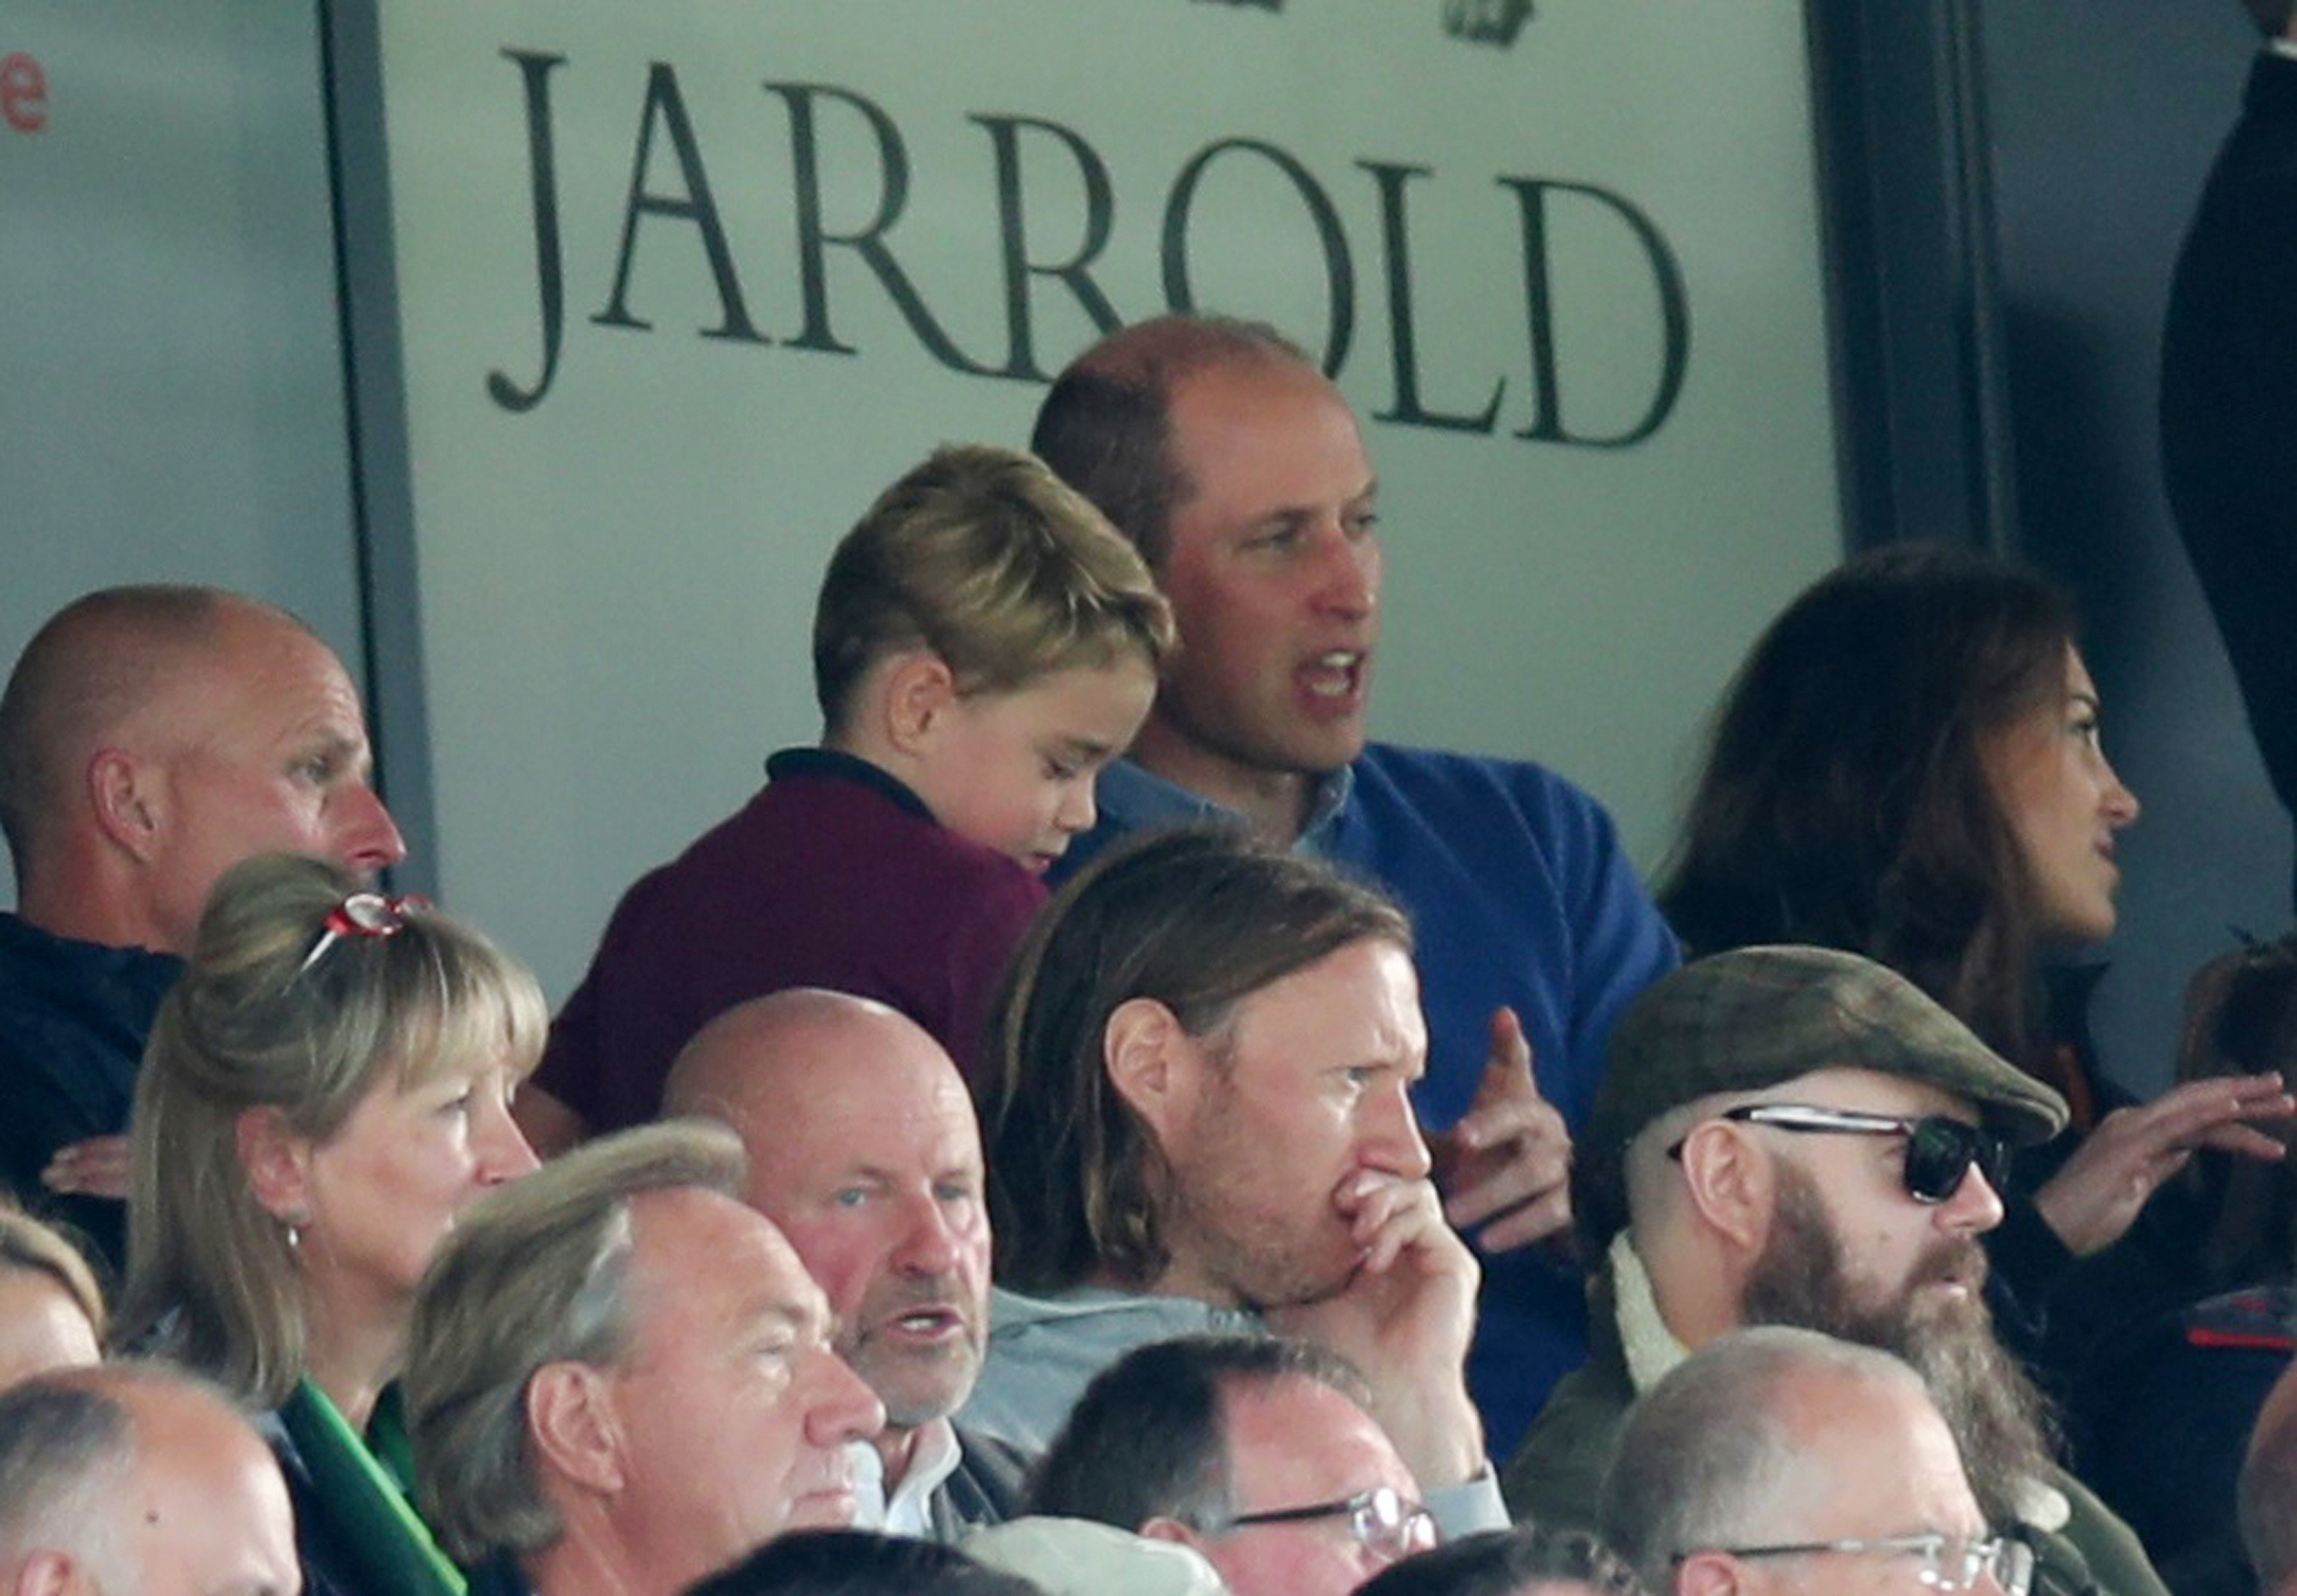 Wills nahm seine ganze Familie mit, um Villa im Oktober 2019 gegen Norwich City zu sehen